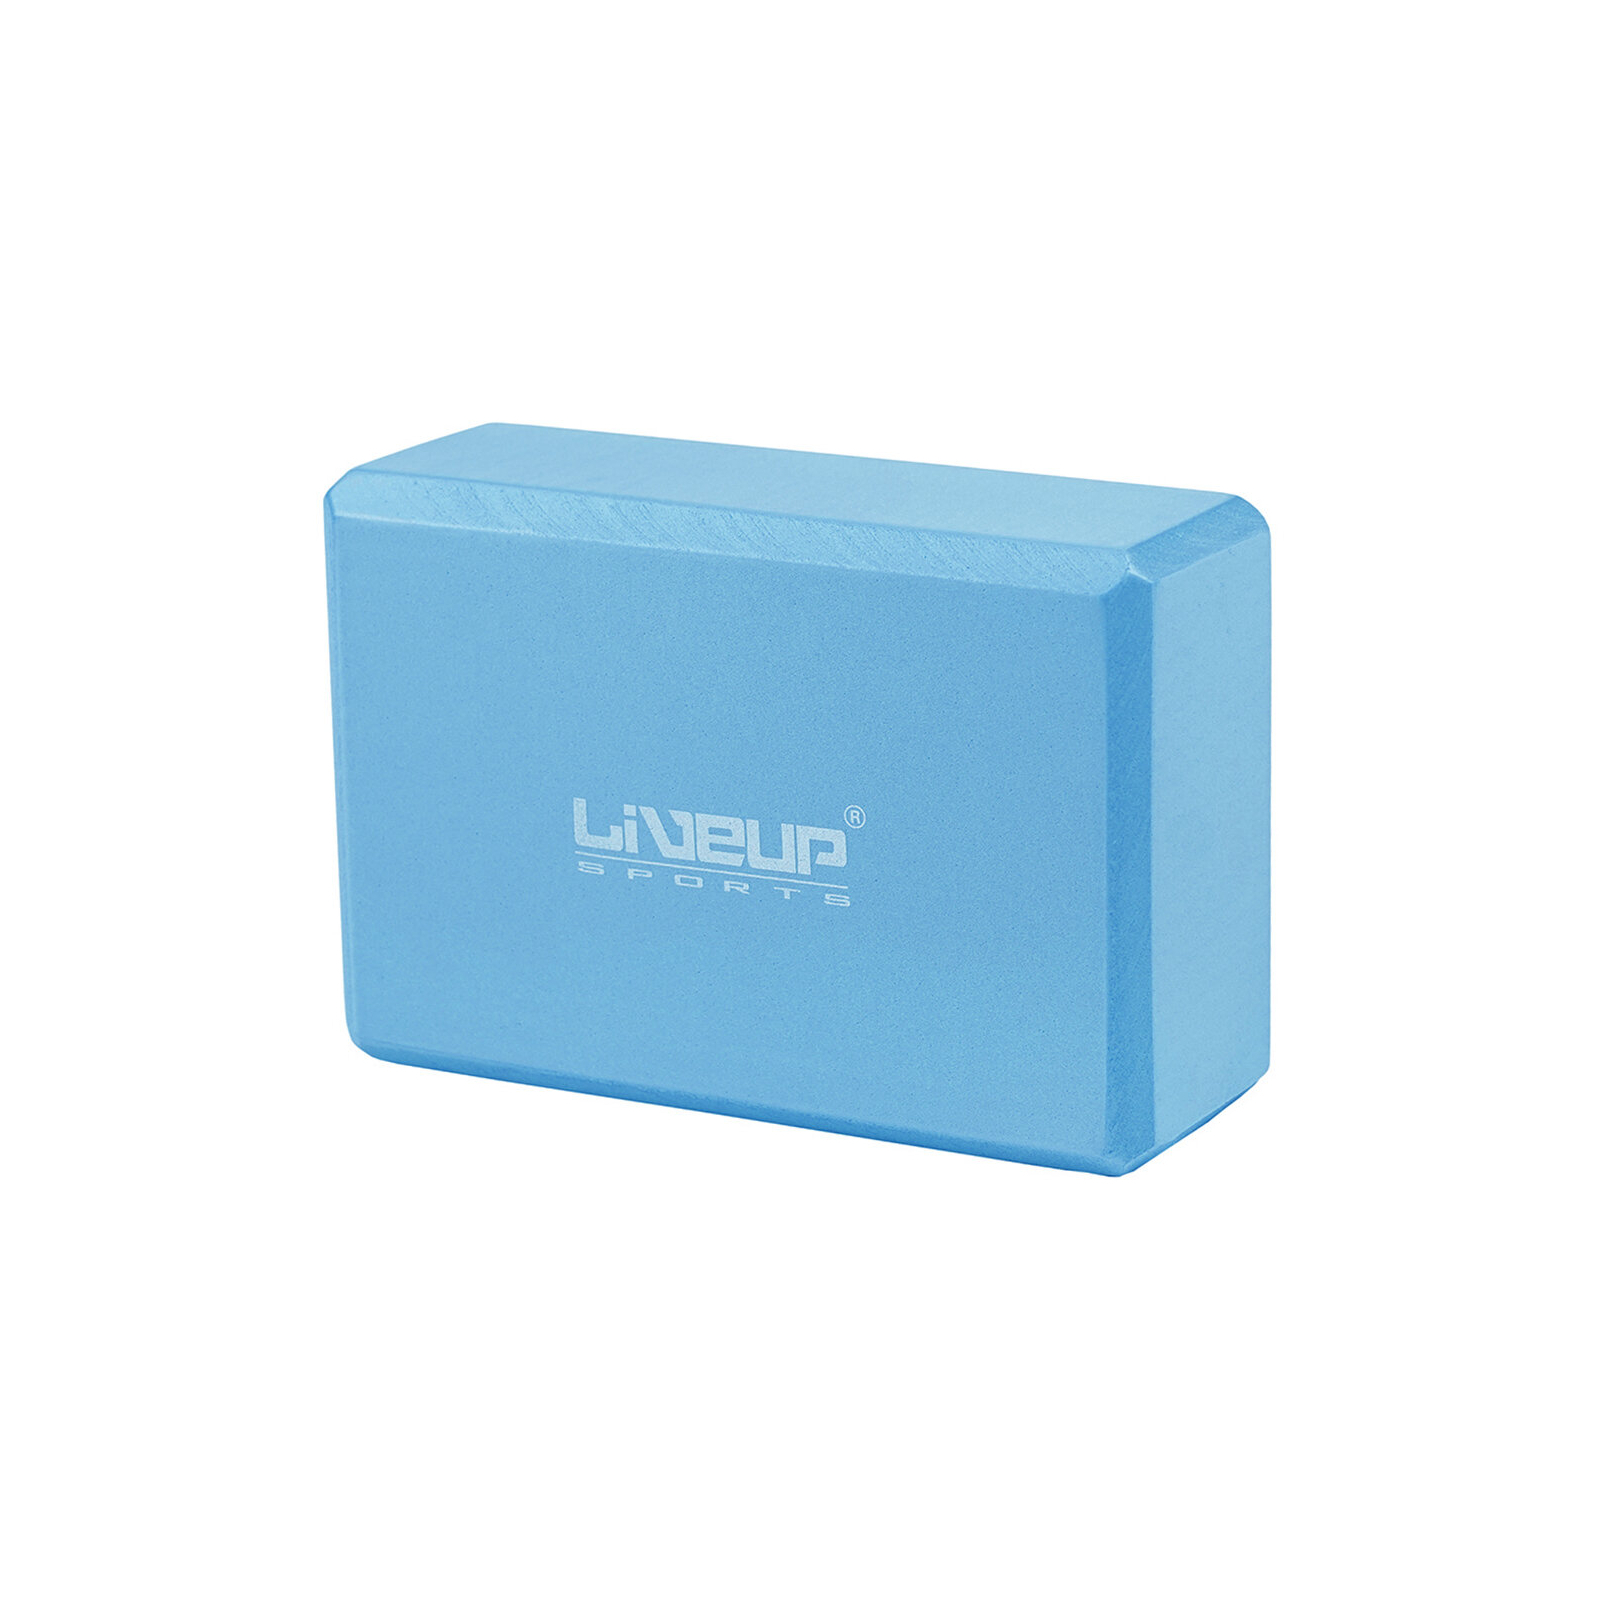 Блок для йоги LiveUp EVA Brick Уні 22,9 x 15,2 x 7,6см Фіолетовий (LS3233A-p)